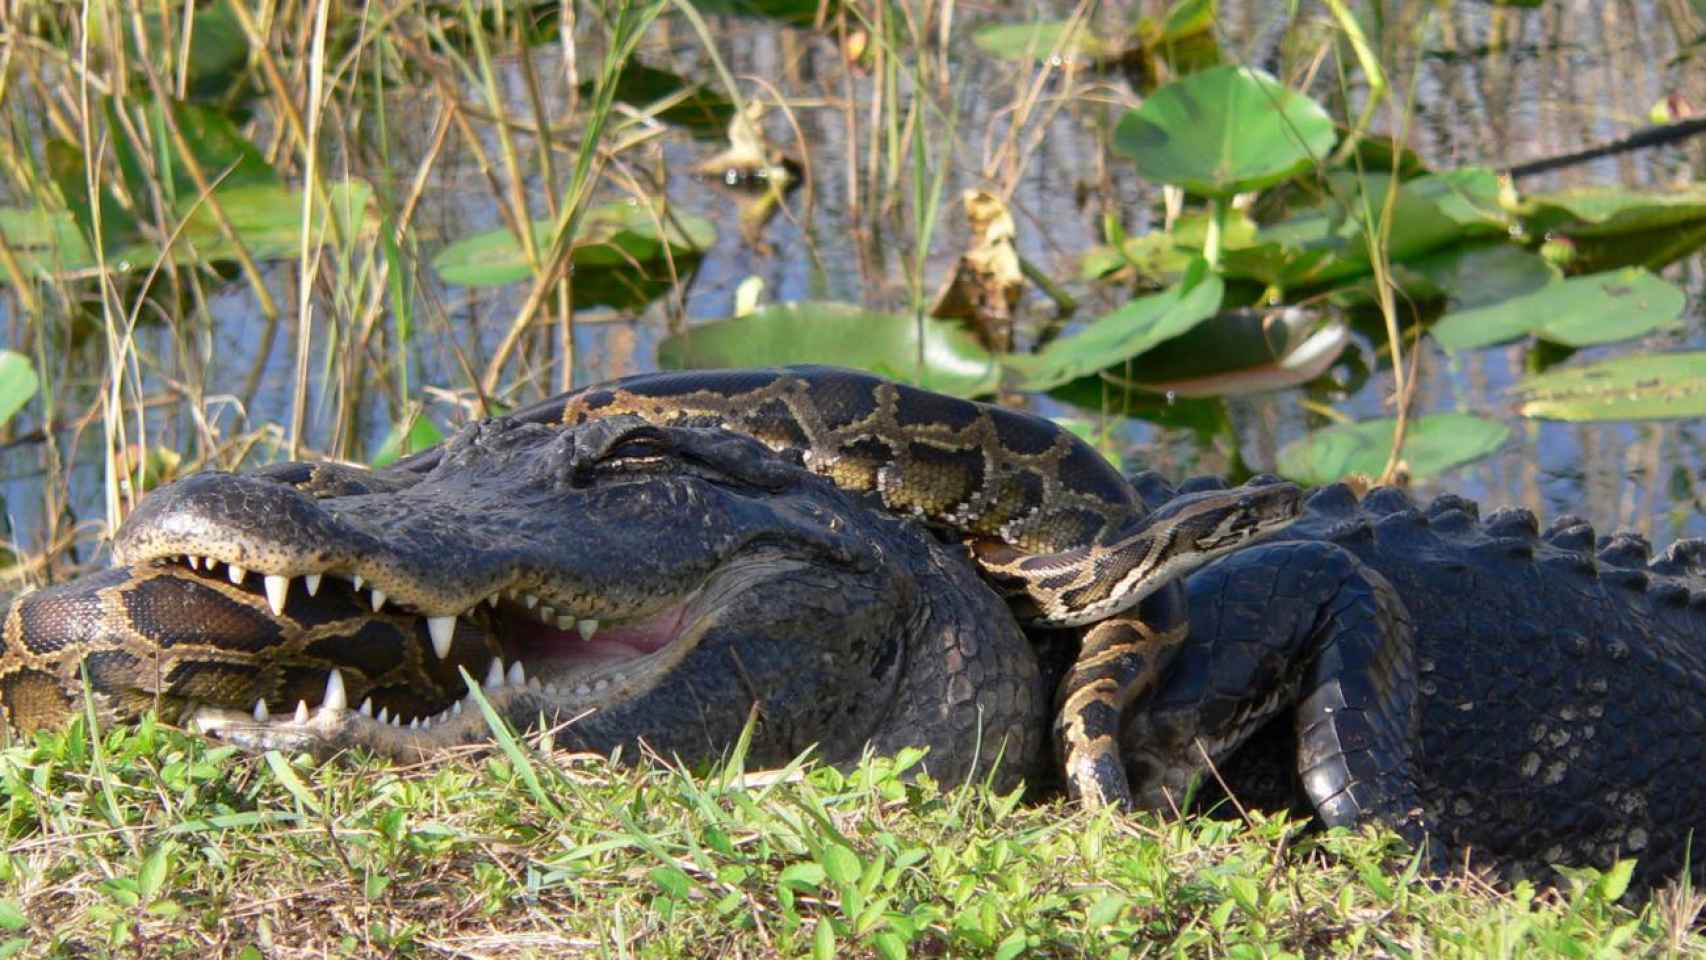 Un aligátor americano ataca a una pitón de Birmania, una especie invasora en Florida que amenaza a las especies autóctonas.